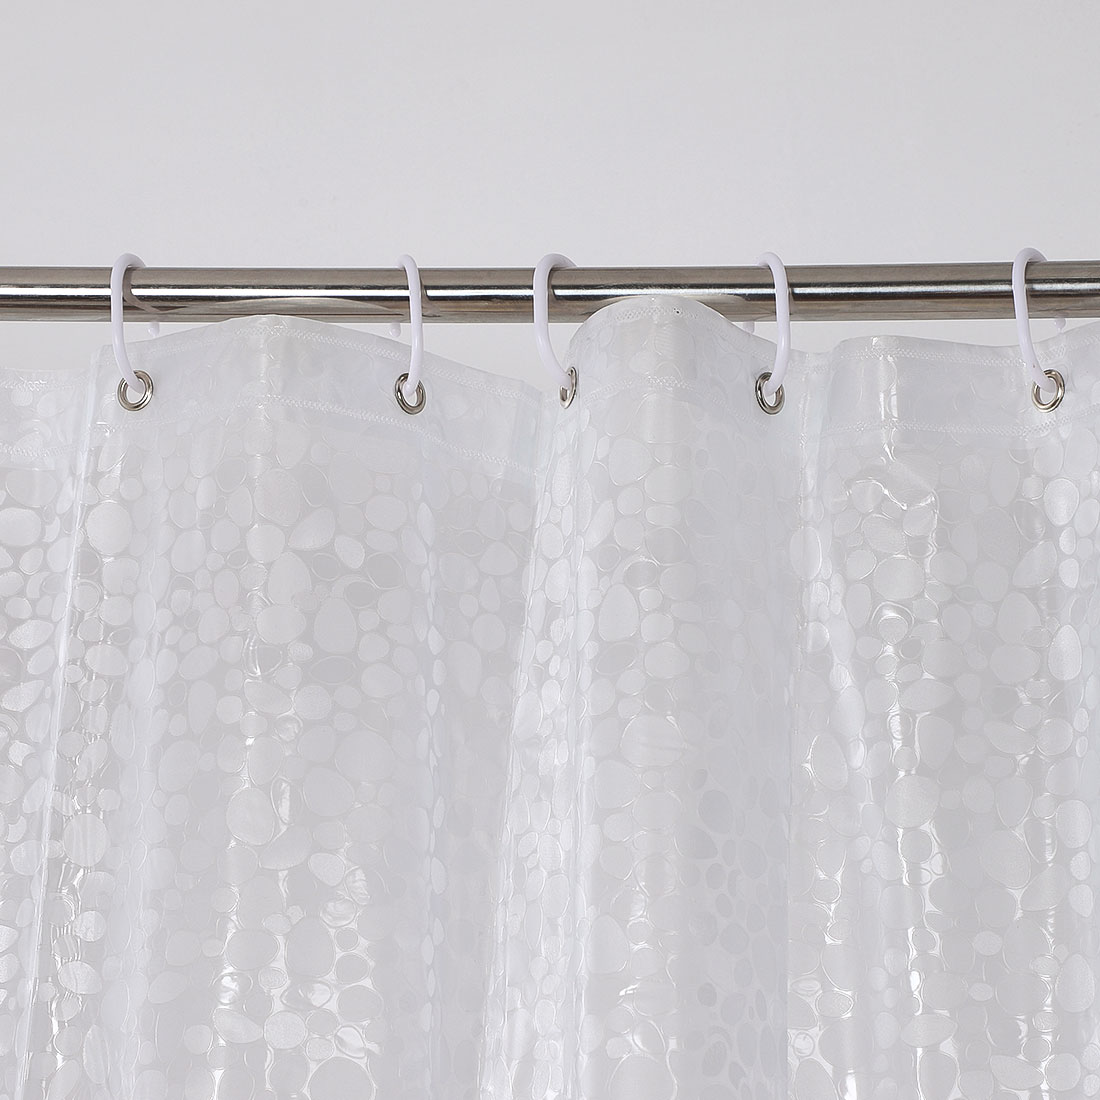 Peva Shower Curtain Liner 72x72, Shower Curtain Liner Hooks